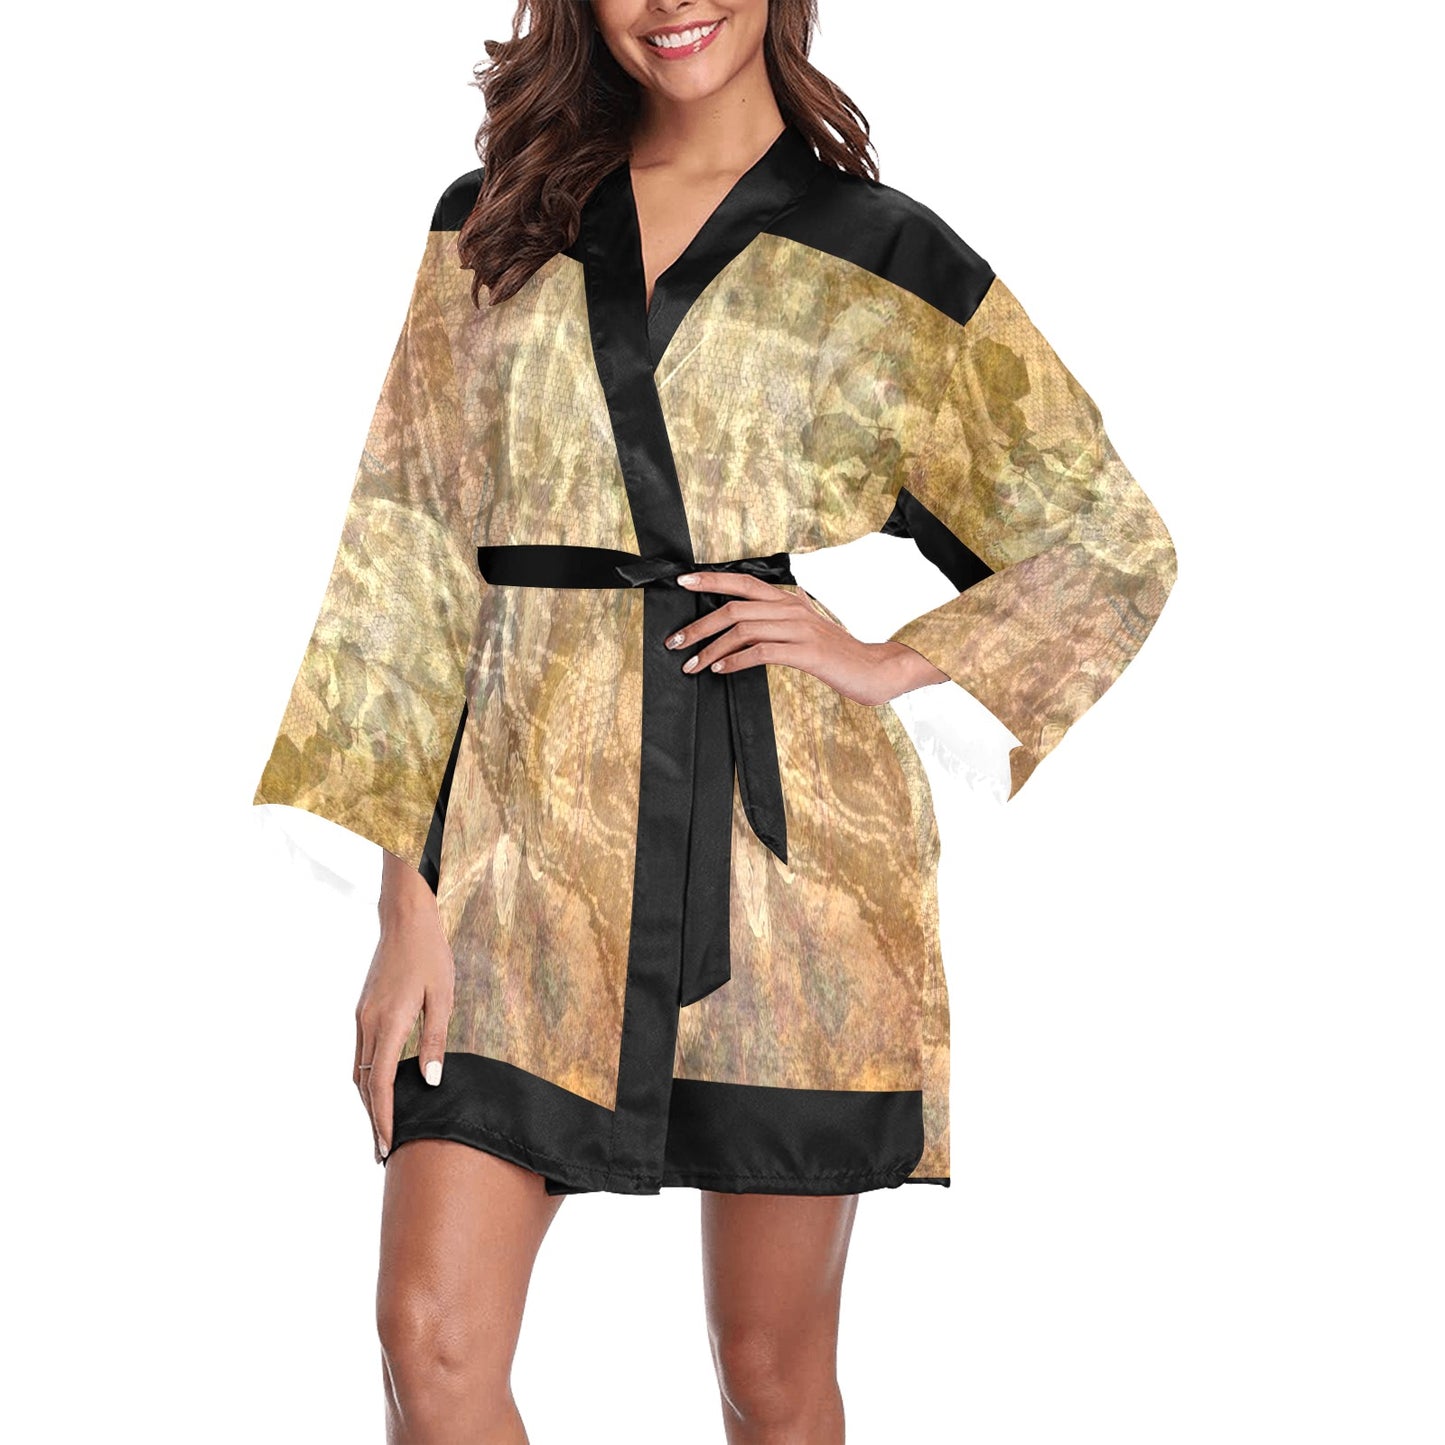 Vintage Floral Kimono Robe, Black or White Trim, Sizes XS to 2XL, Design 17x